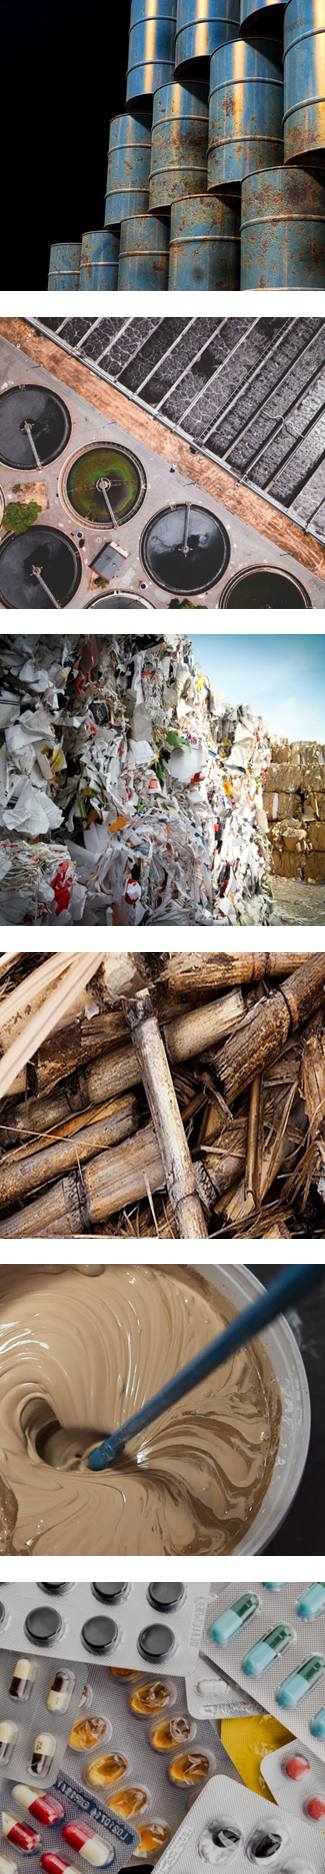 Valorisation biomasse, déchets et effluents